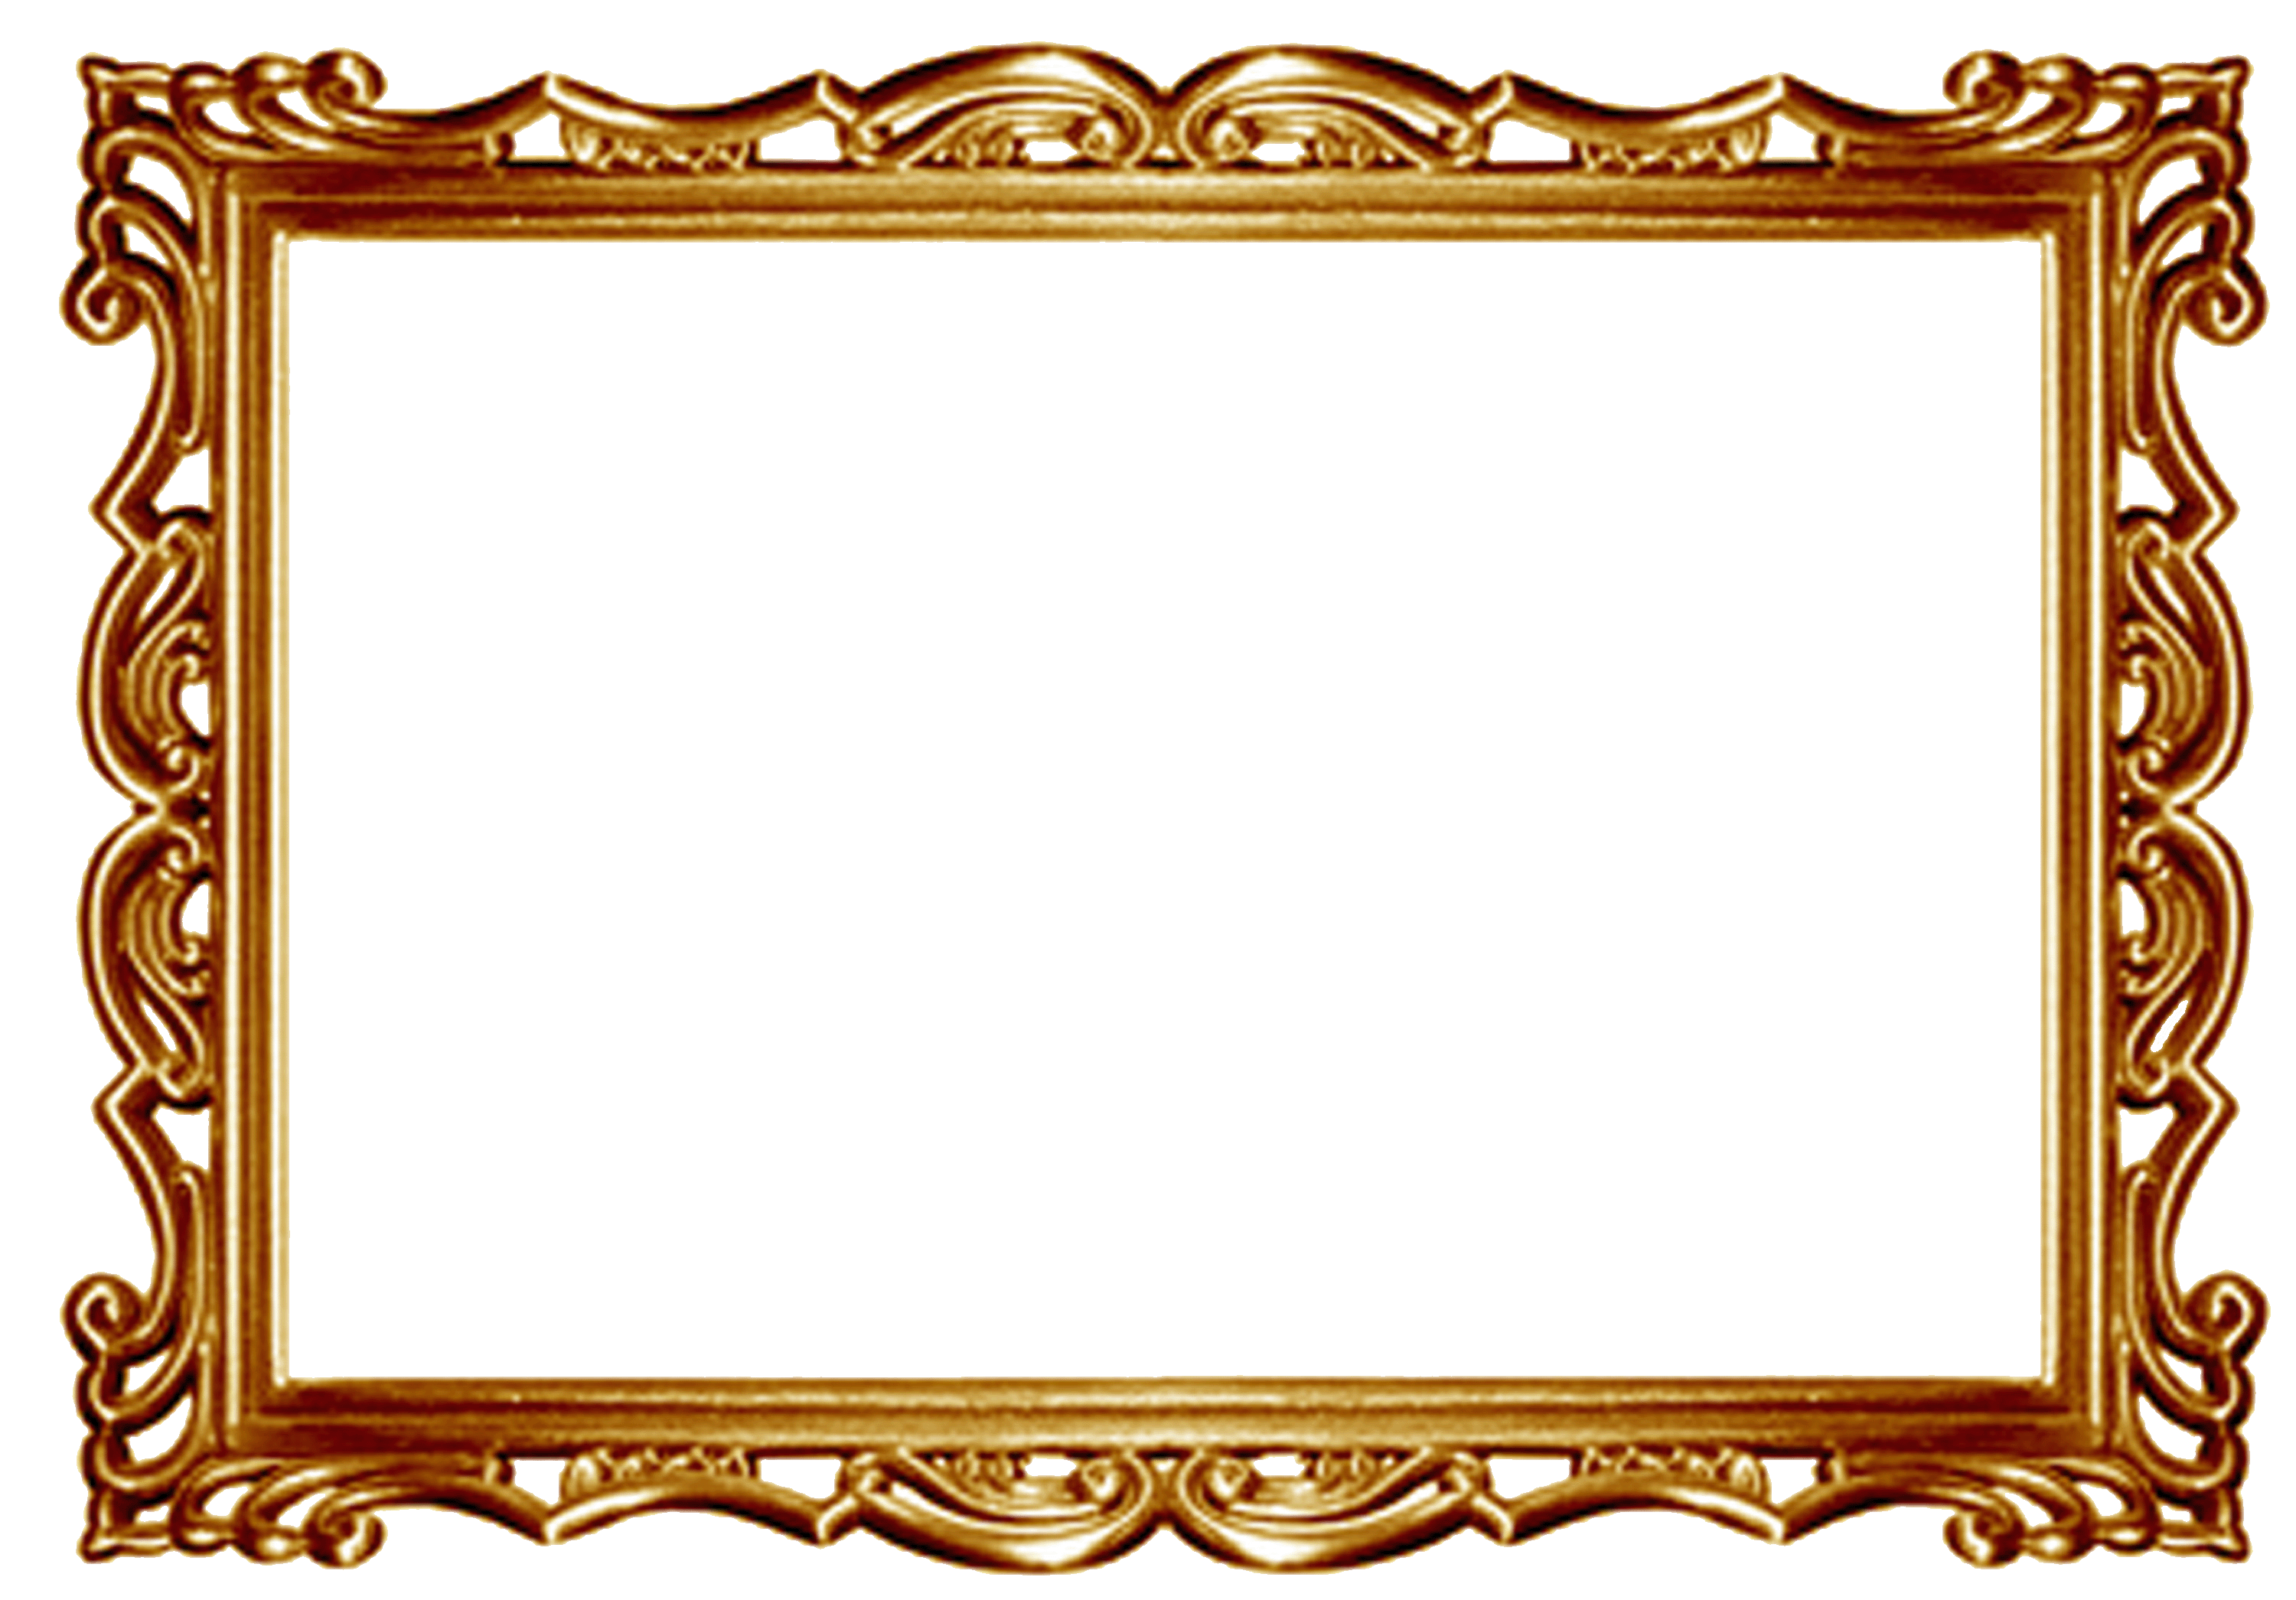 Sailor clipart frame. Gold border clip art